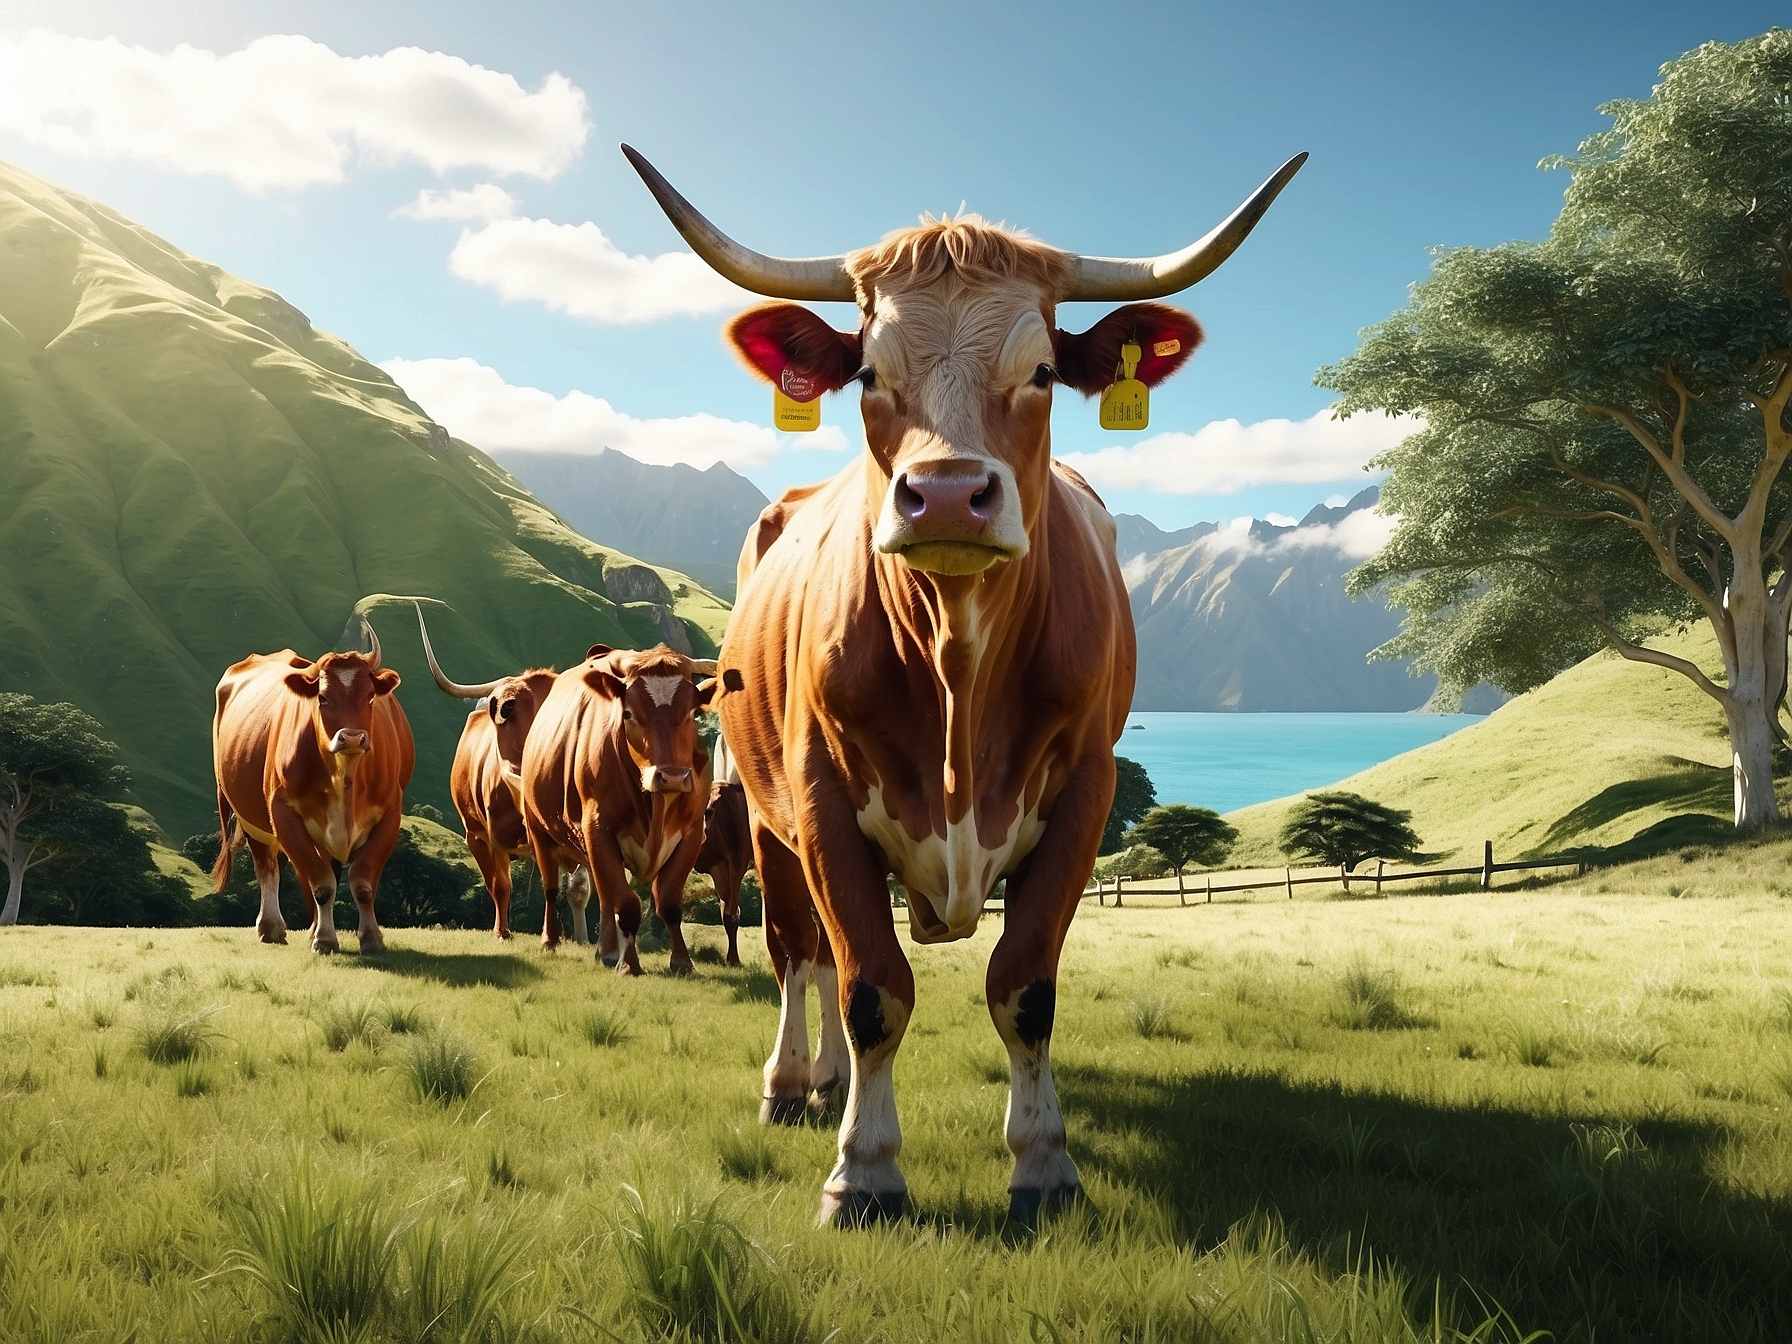 紐西蘭草飼牛-草飼牛-草飼牛香港-紐西蘭草飼-草飼-New Zealand grass fed cattle-grass fed cattle